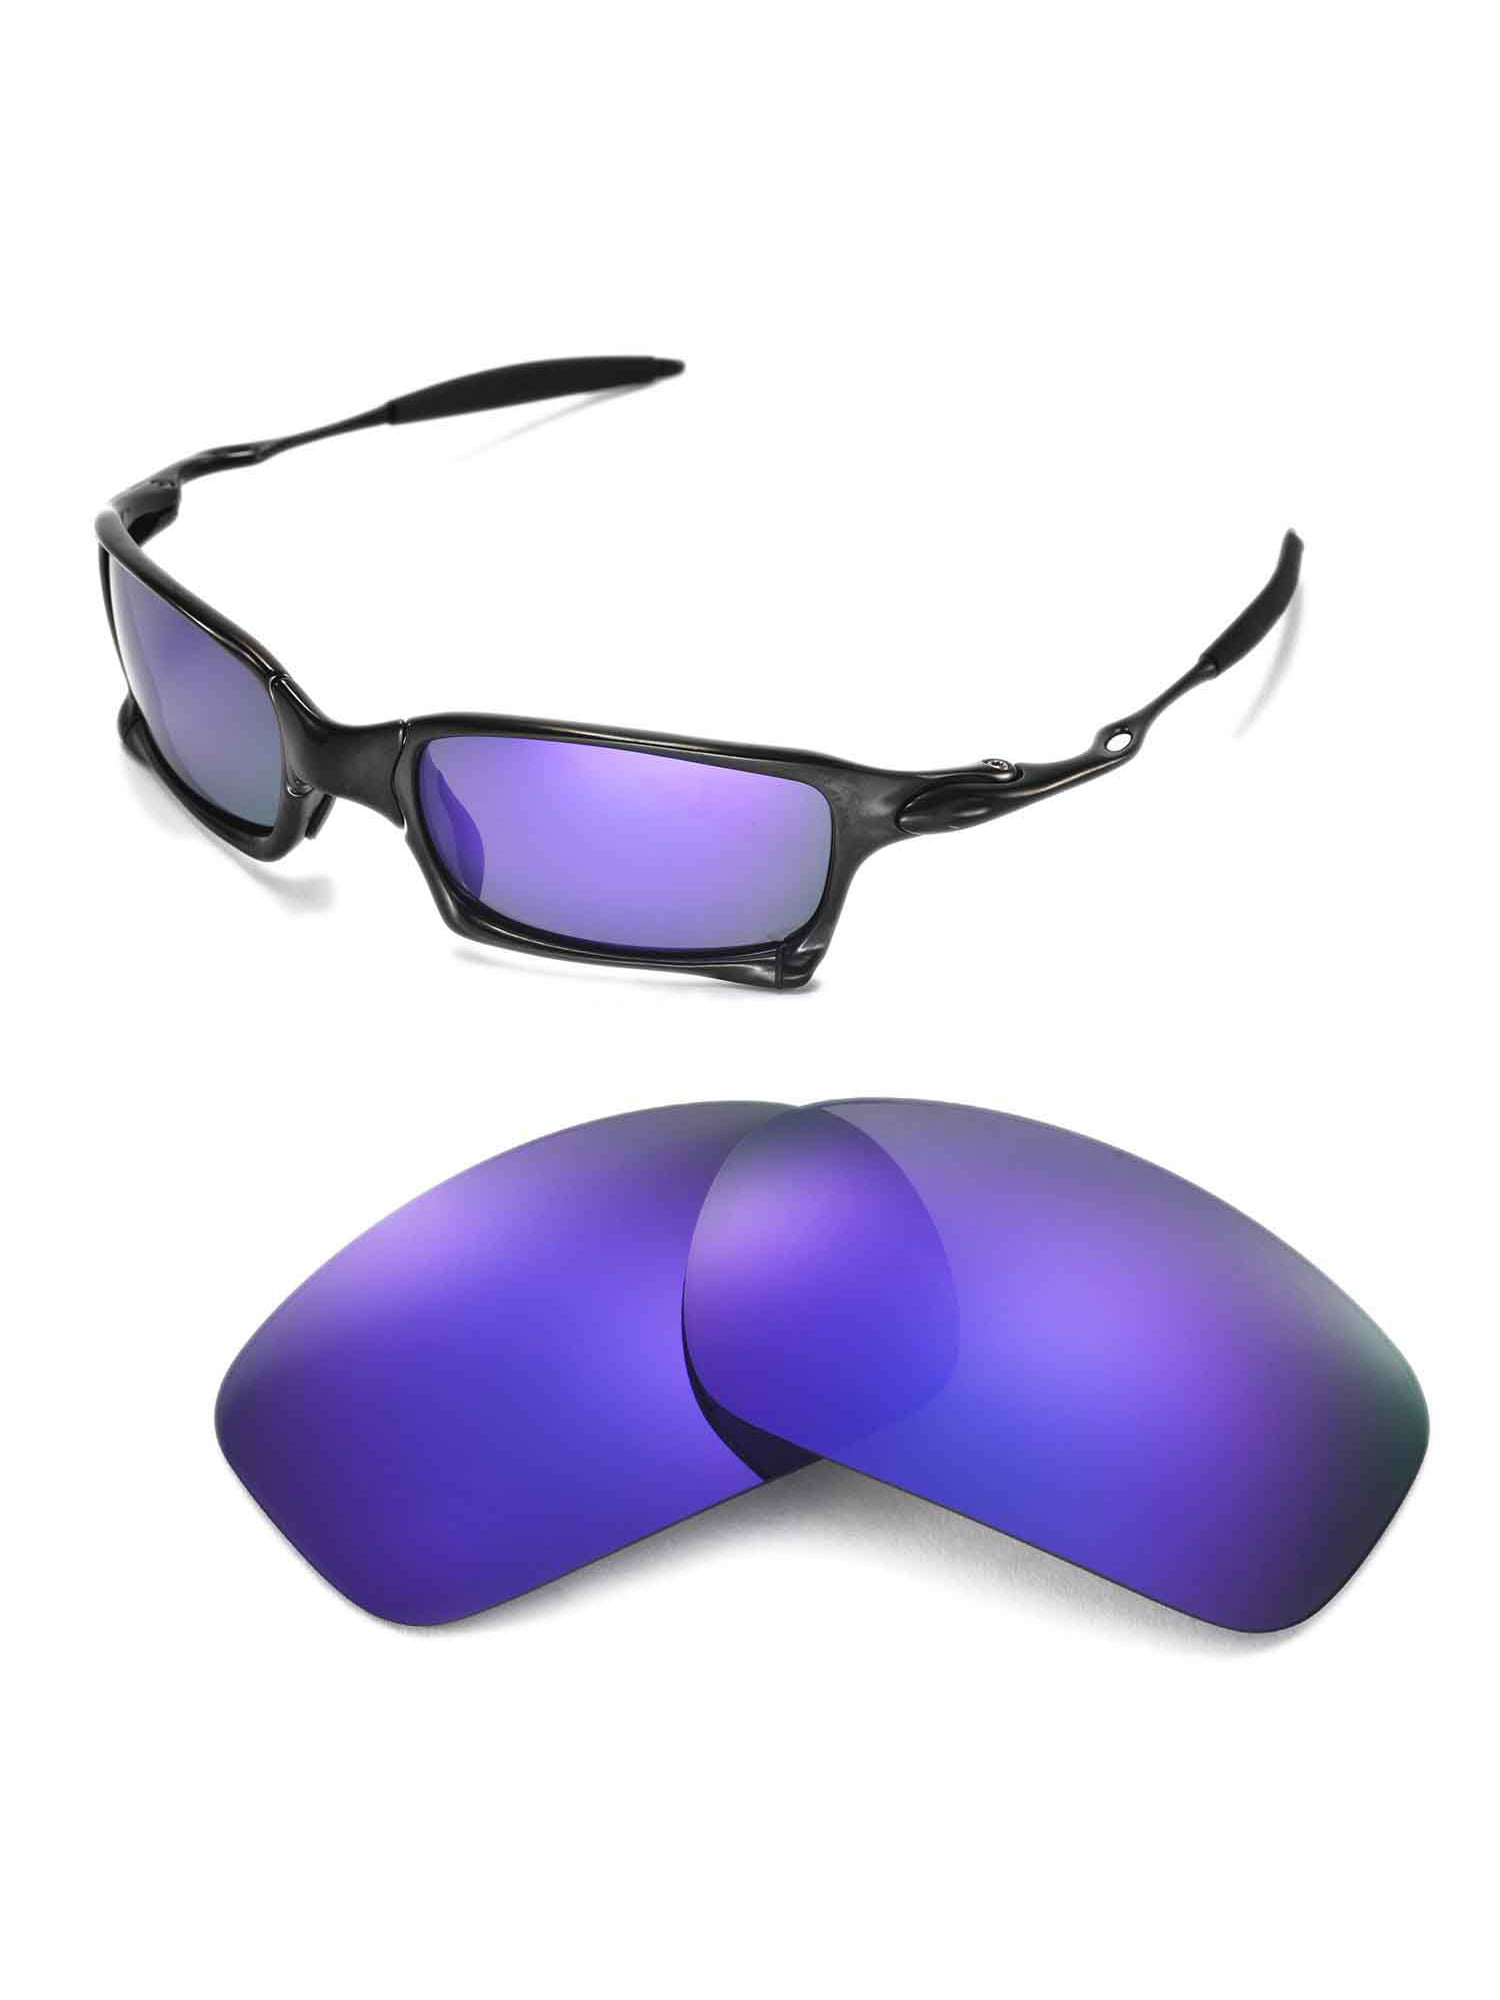 Oculos Oakley Juliet Squared plasma roxo xmetal doble x com o Melhor Preço  é no Zoom